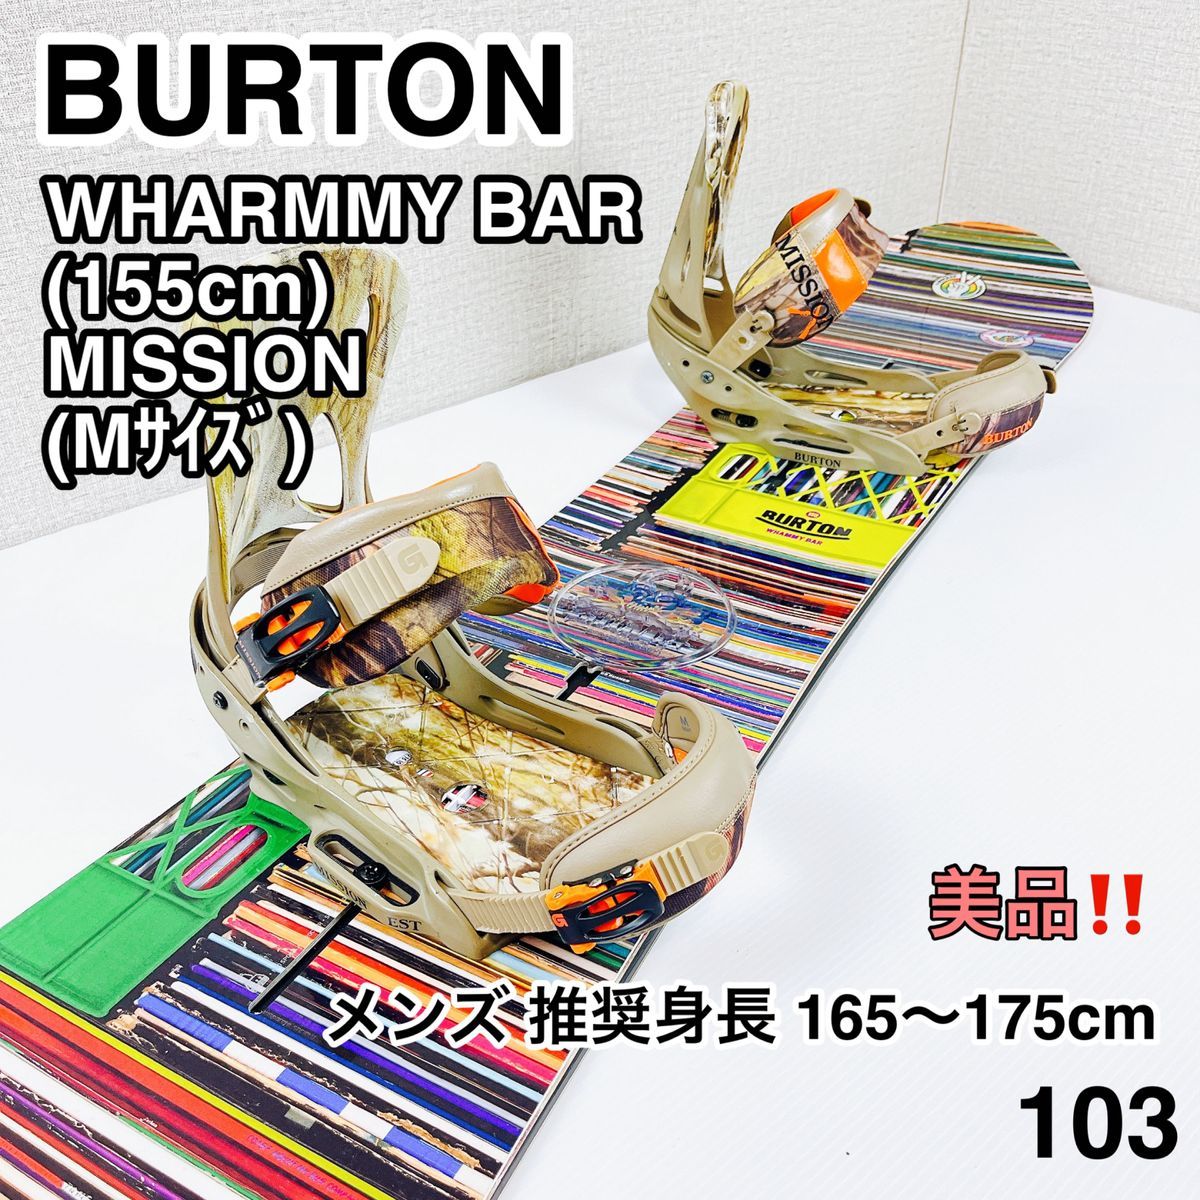 BURTON WHARMMY BAR 155cm MISSION Mサイズ